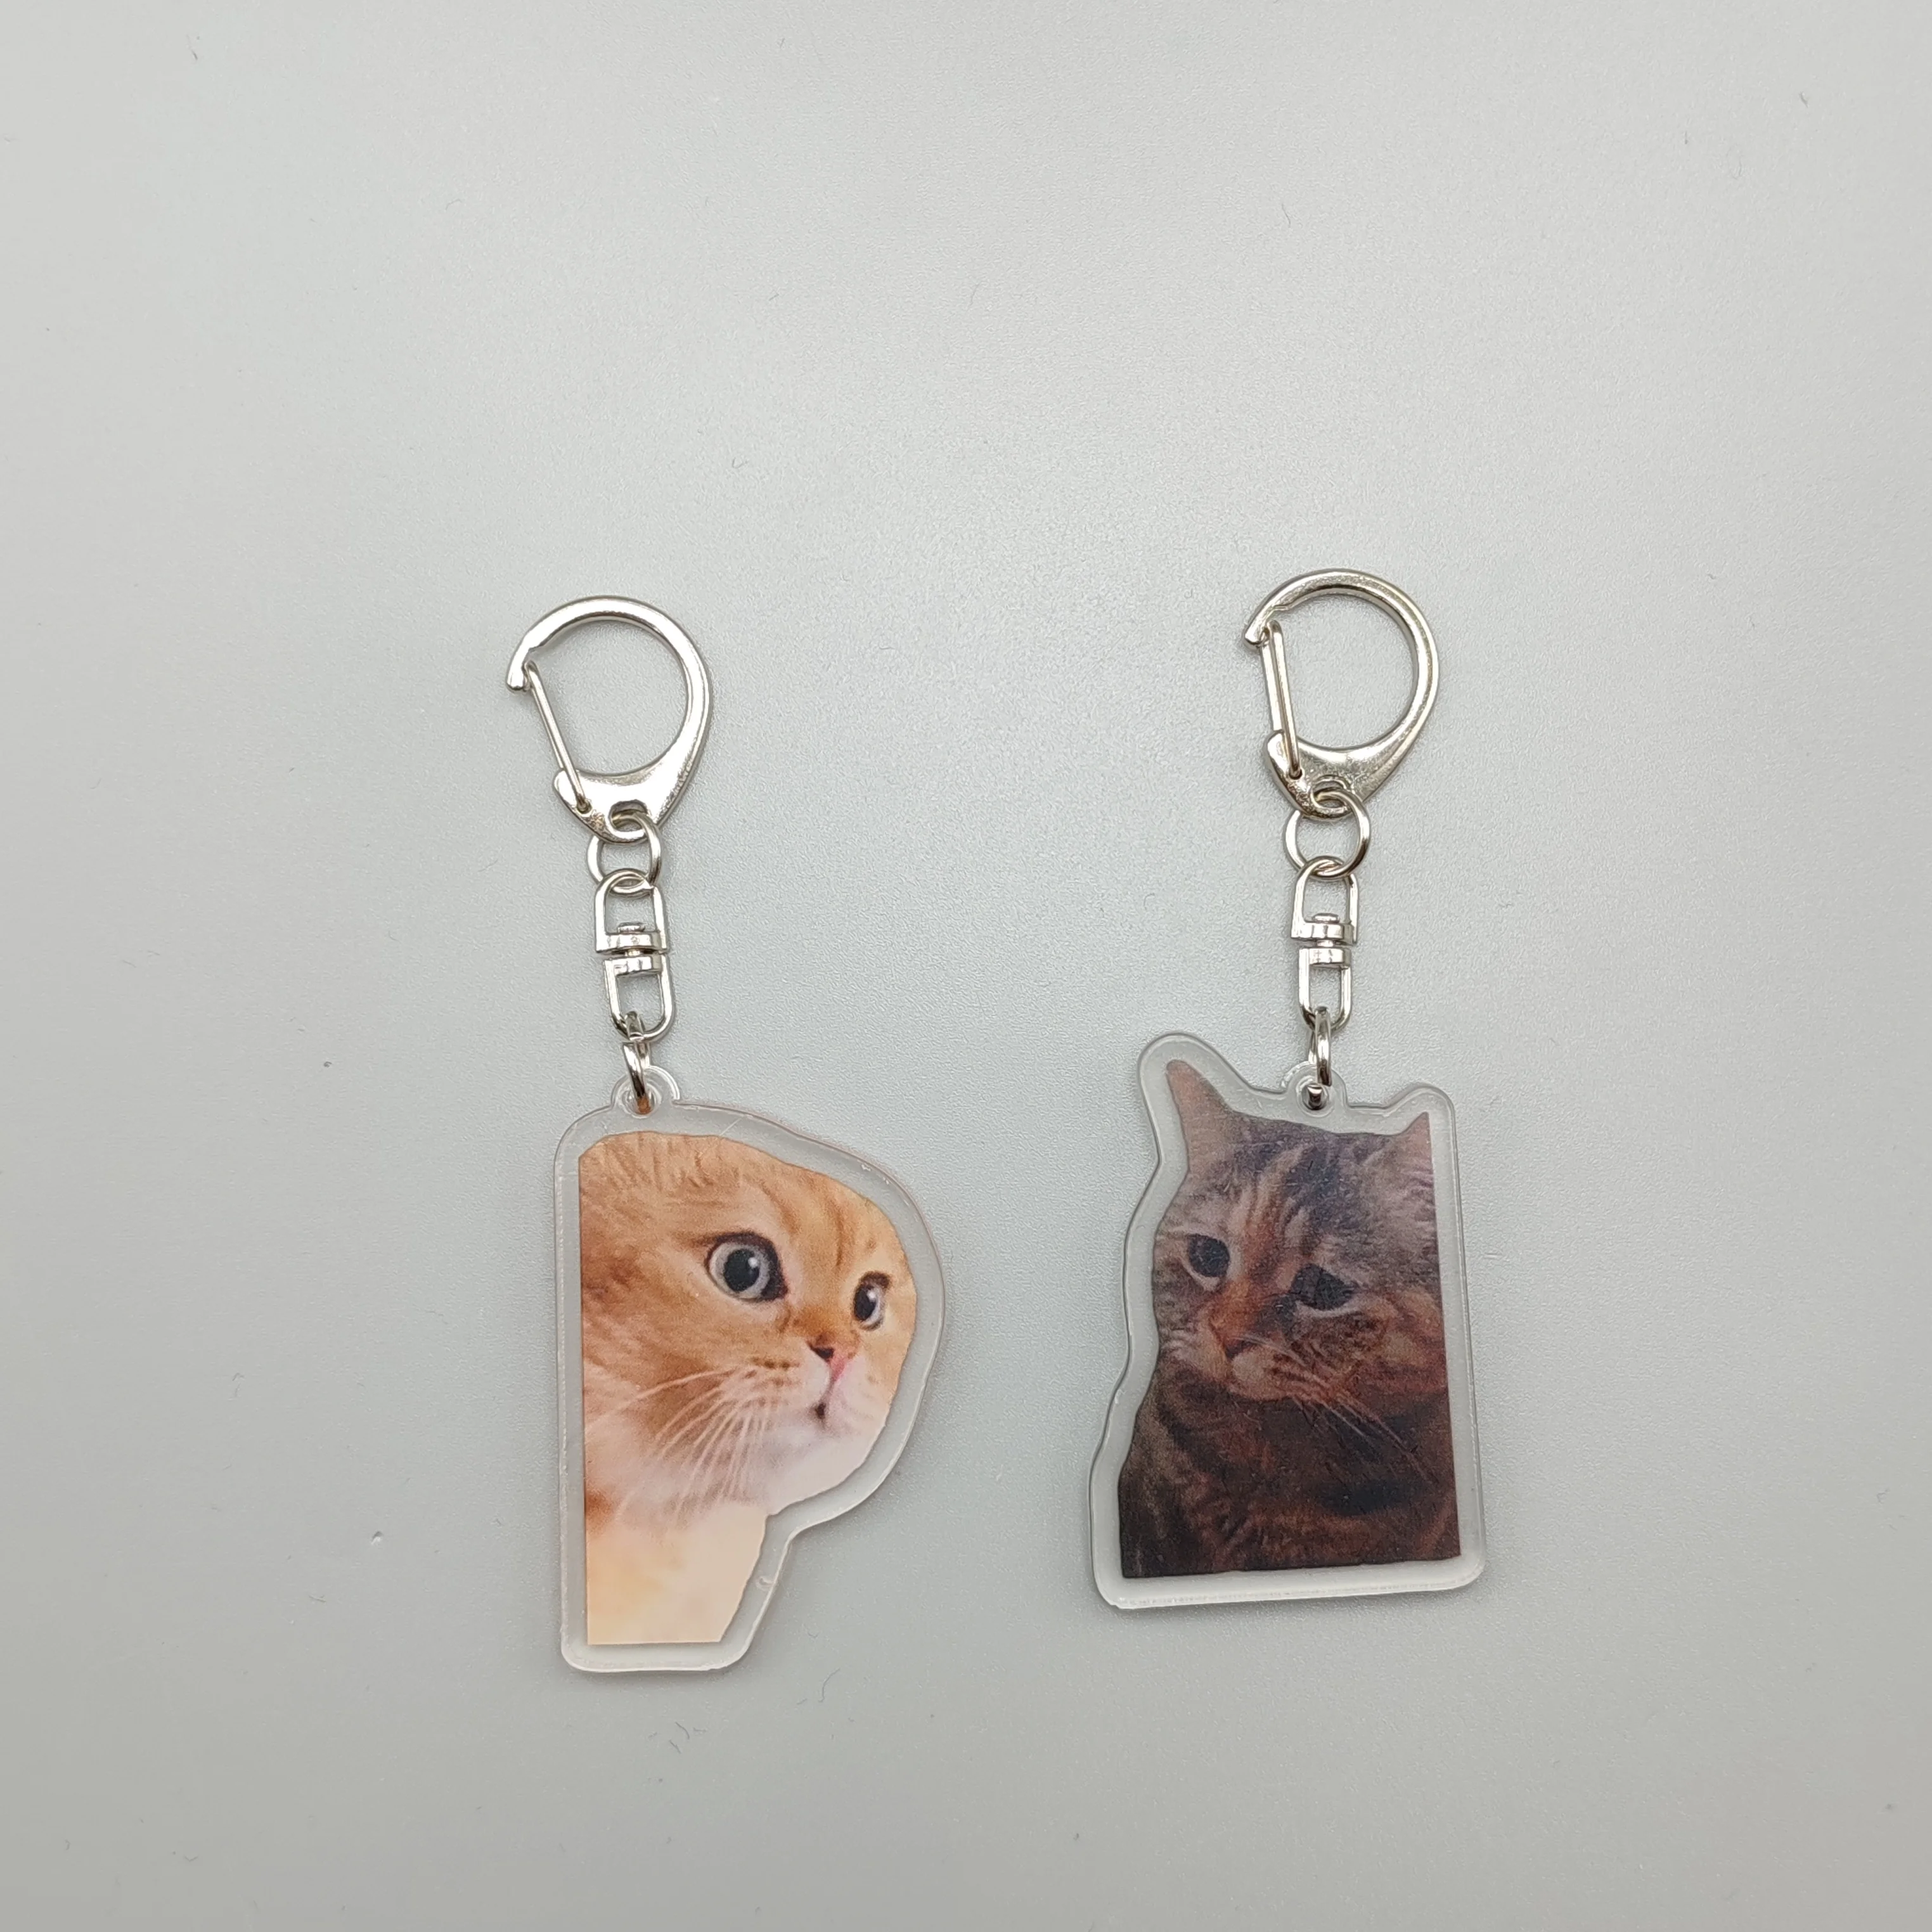 Vrouwen Tas Hanger Schattige Sleutelhanger Voor Tassen Twee Katten Pratende Meme Pratende Katten Beleefde Kat Schattige Dingen Goedkoop Cadeau Voor Beste Vriend